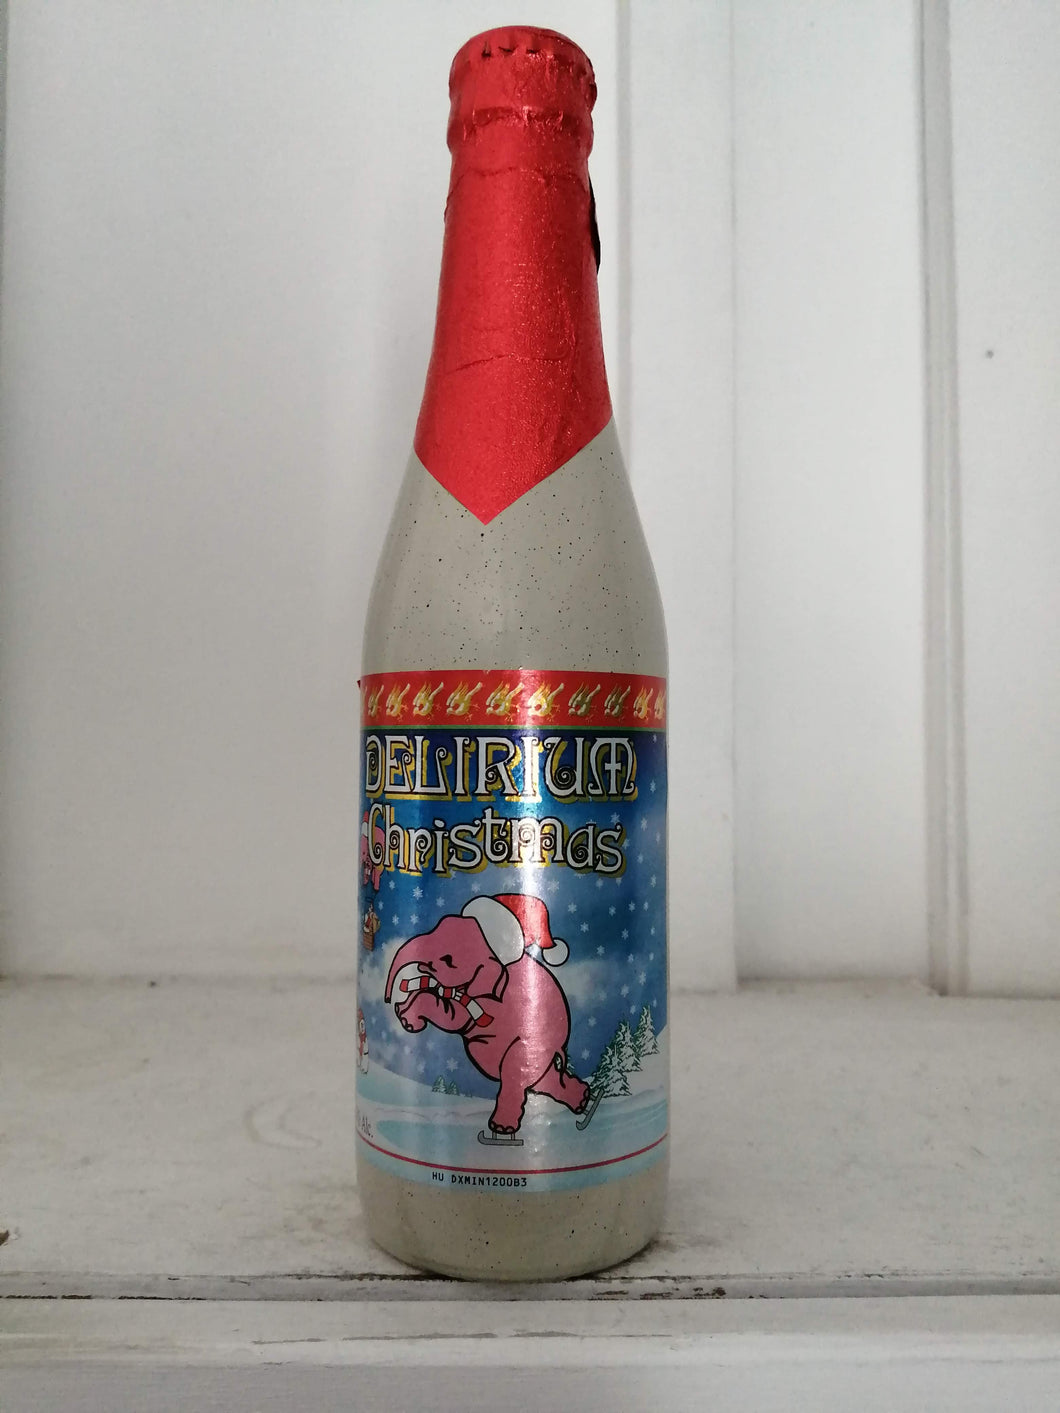 Delirium Christmas 10% (330ml bottle)